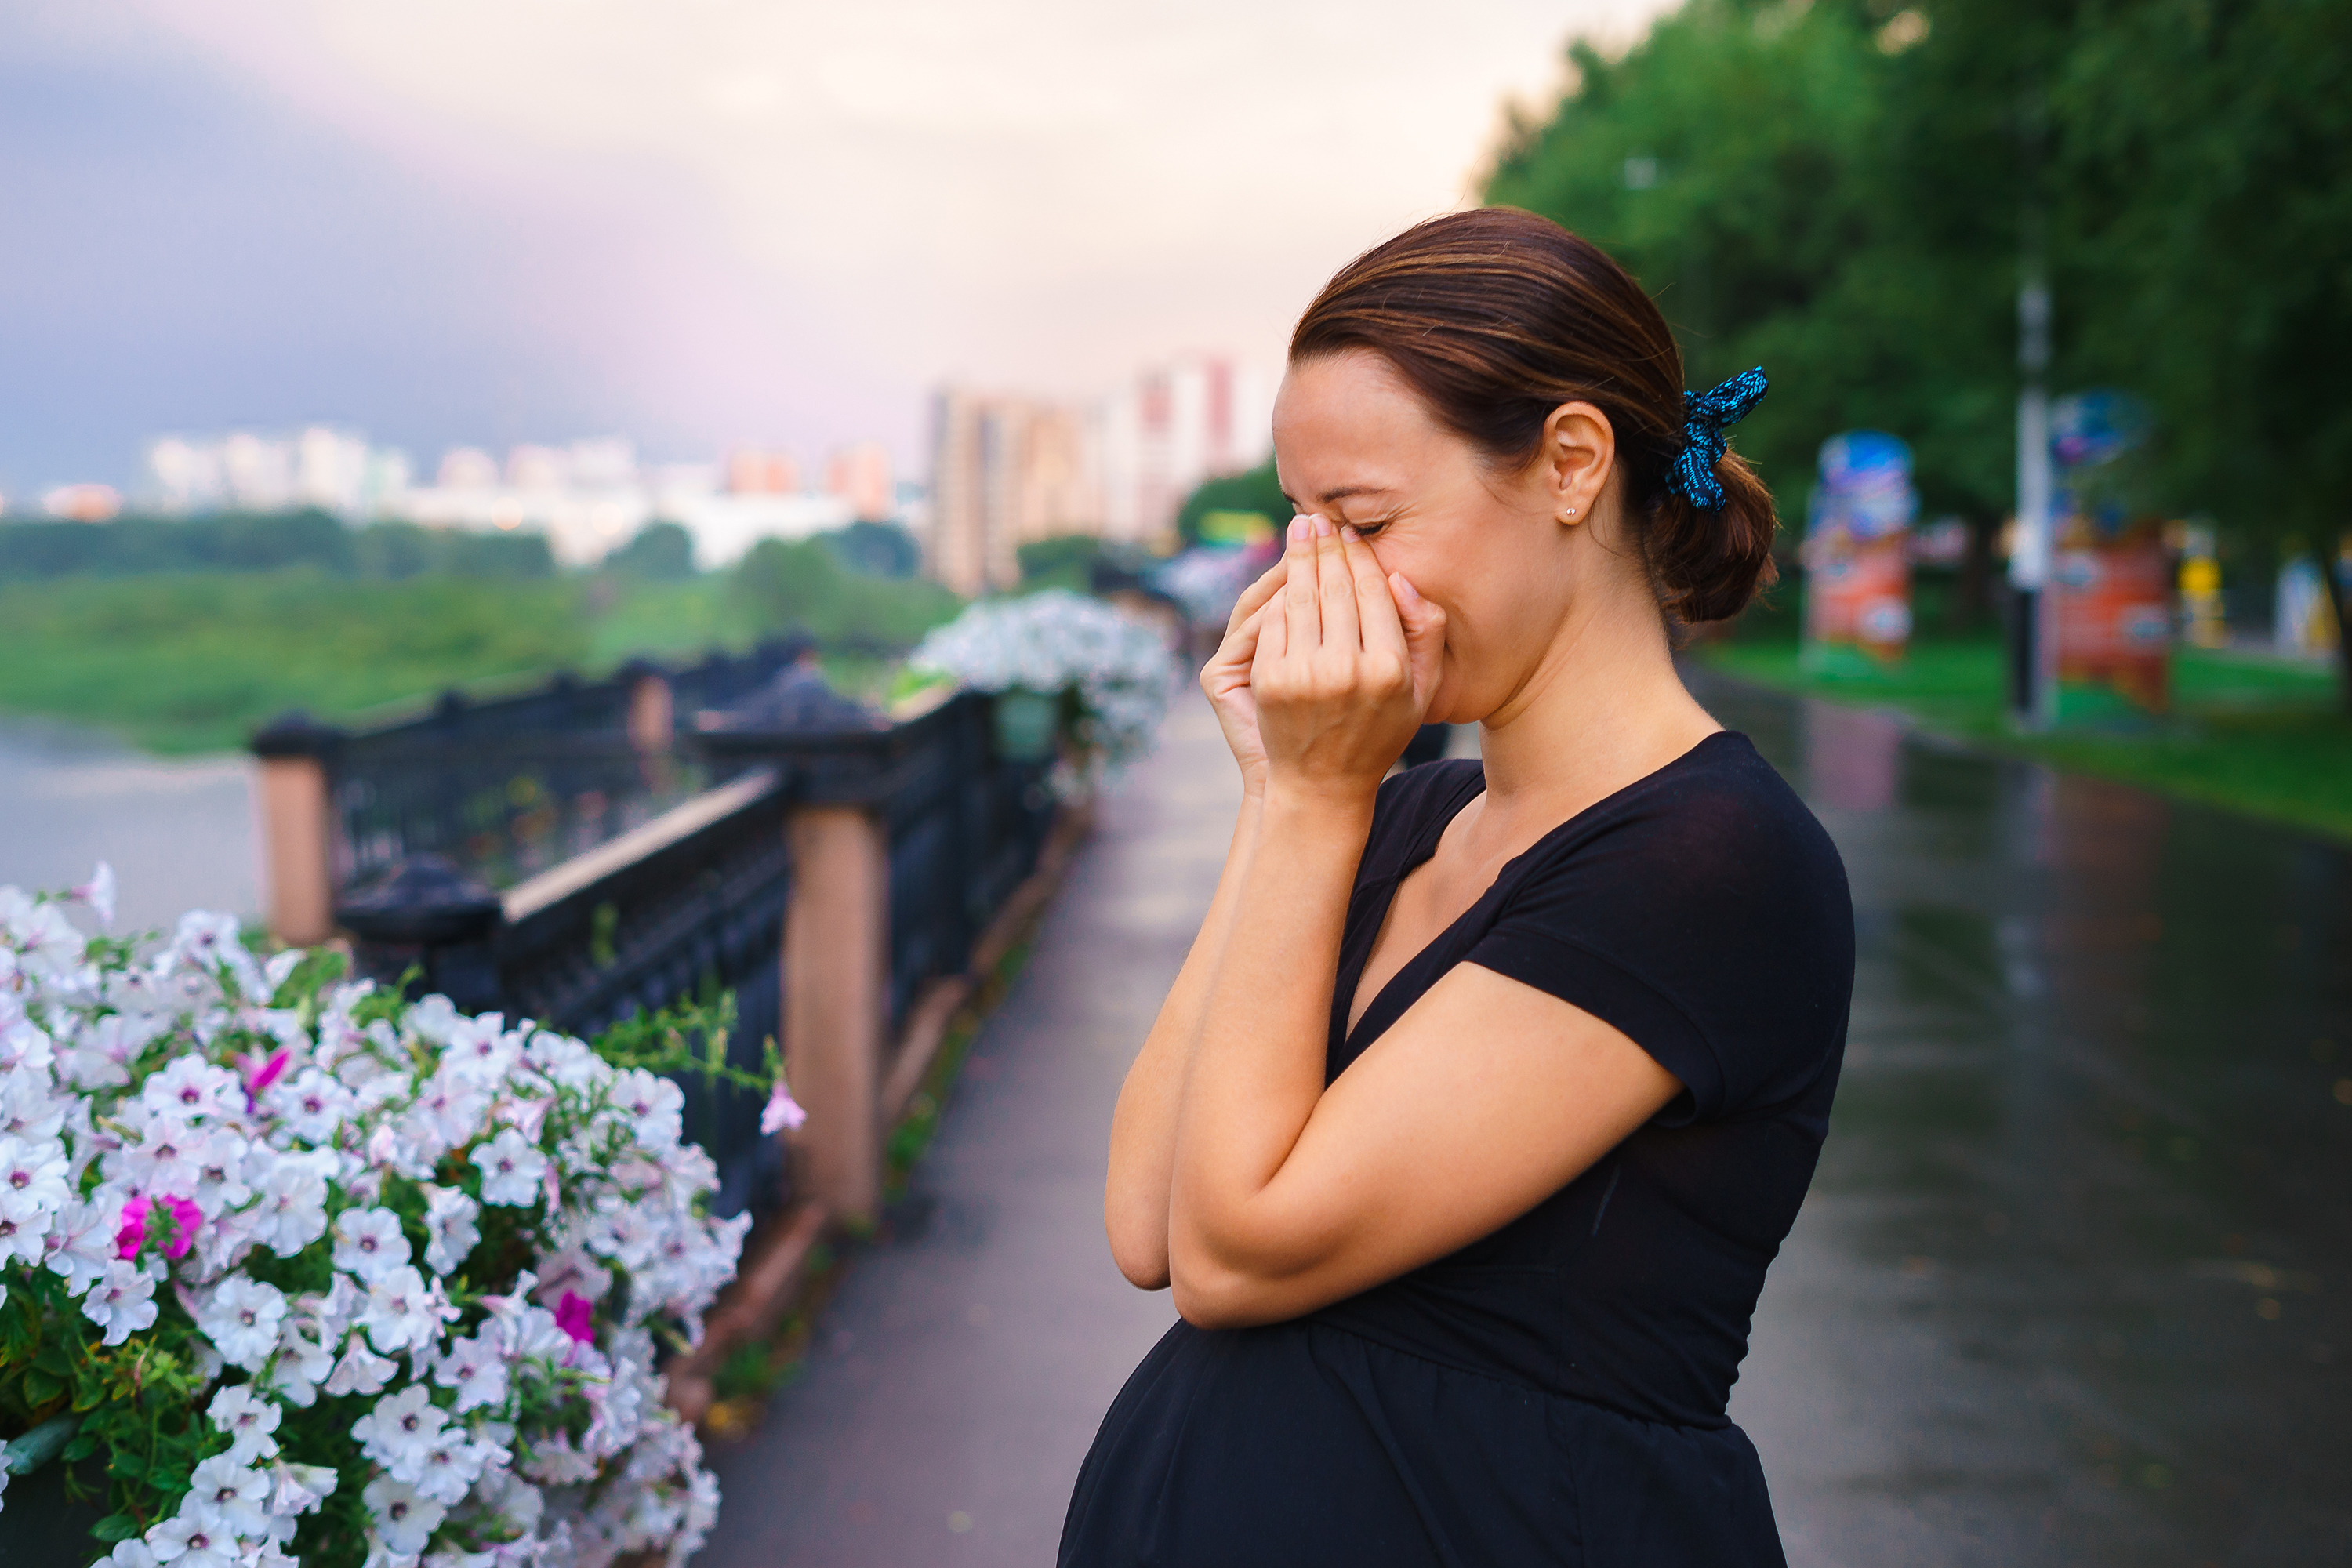 Eine schwangere Frau steht am Kai und weint | Quelle: Shutterstock